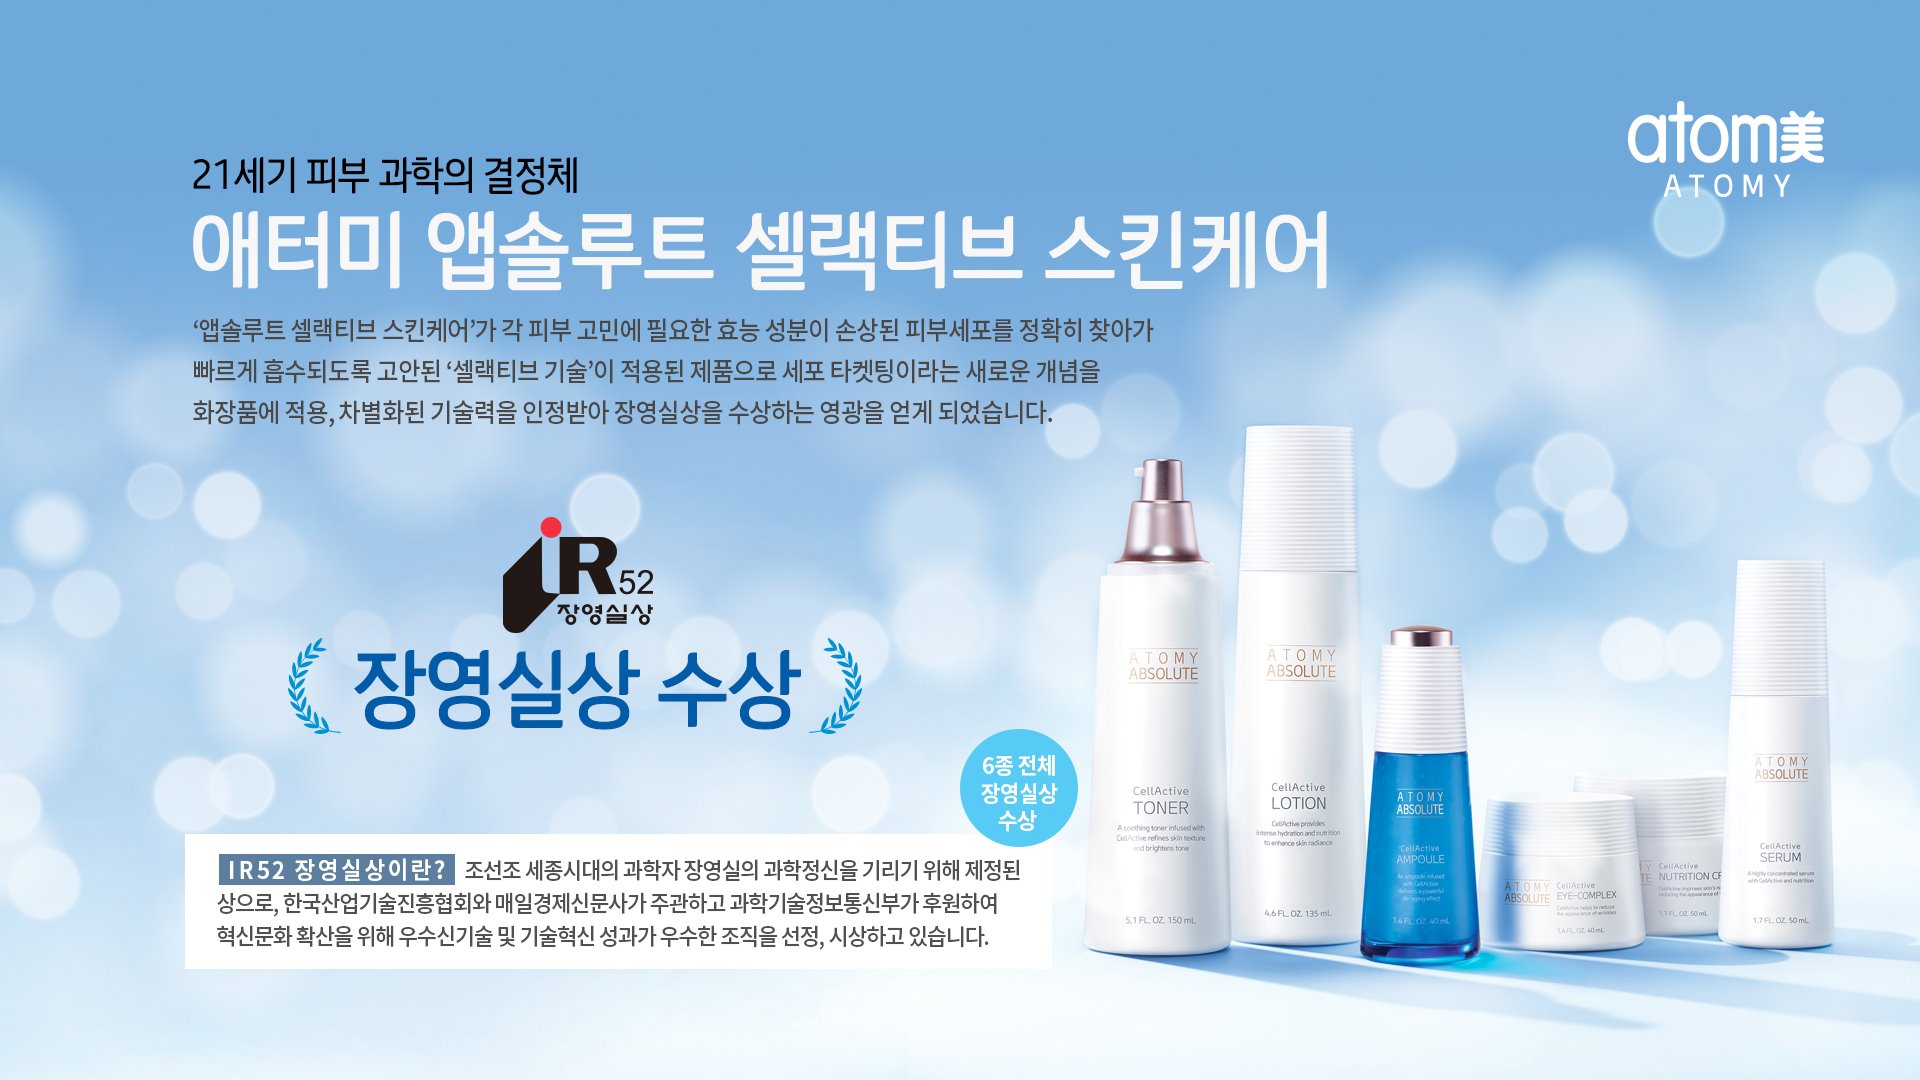 Bộ Mỹ phẩm Atomy Absolute Cell-Active Skincare đã nhận giải công nghệ Sejong ĐẦU TIÊN TRONG LÀNG MỸ PHẨM.